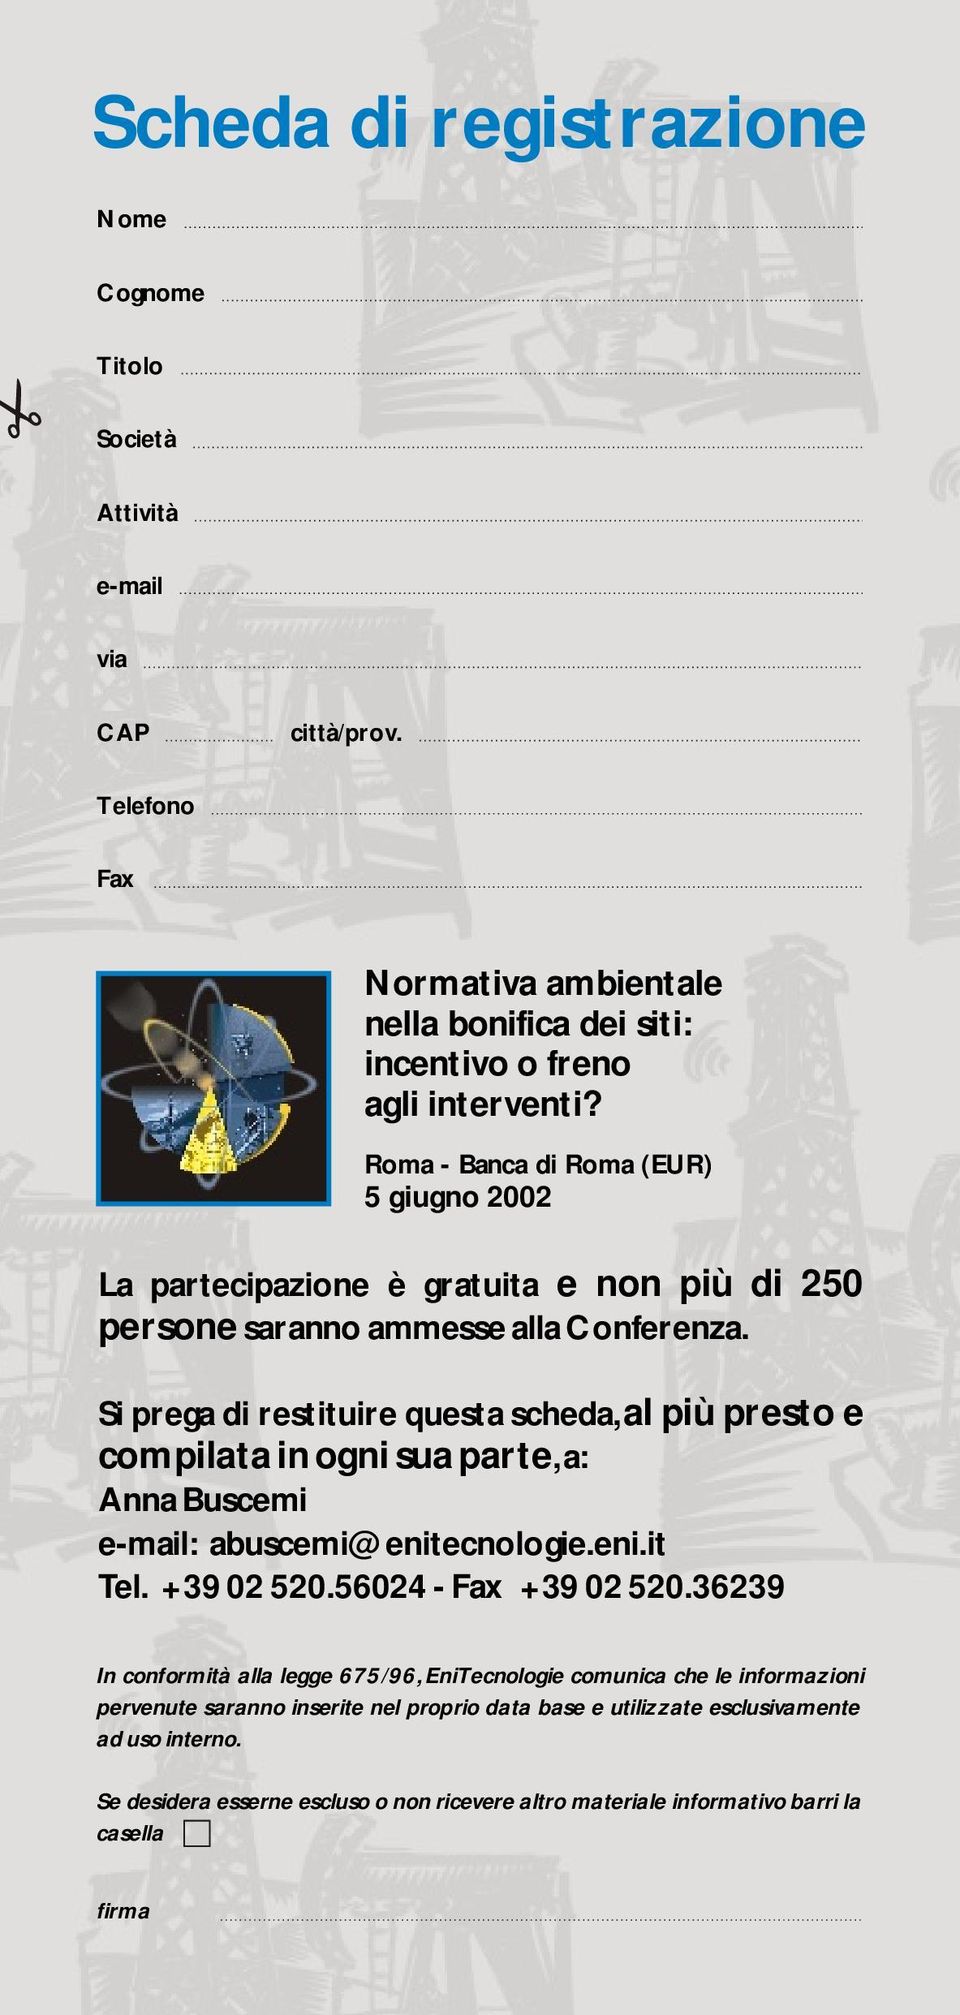 Si prega di restituire questa scheda, al più presto e compilata in ogni sua parte, a: Anna Buscemi e-mail: abuscemi@enitecnologie.eni.it Tel. +39 02 520.56024 - Fax +39 02 520.